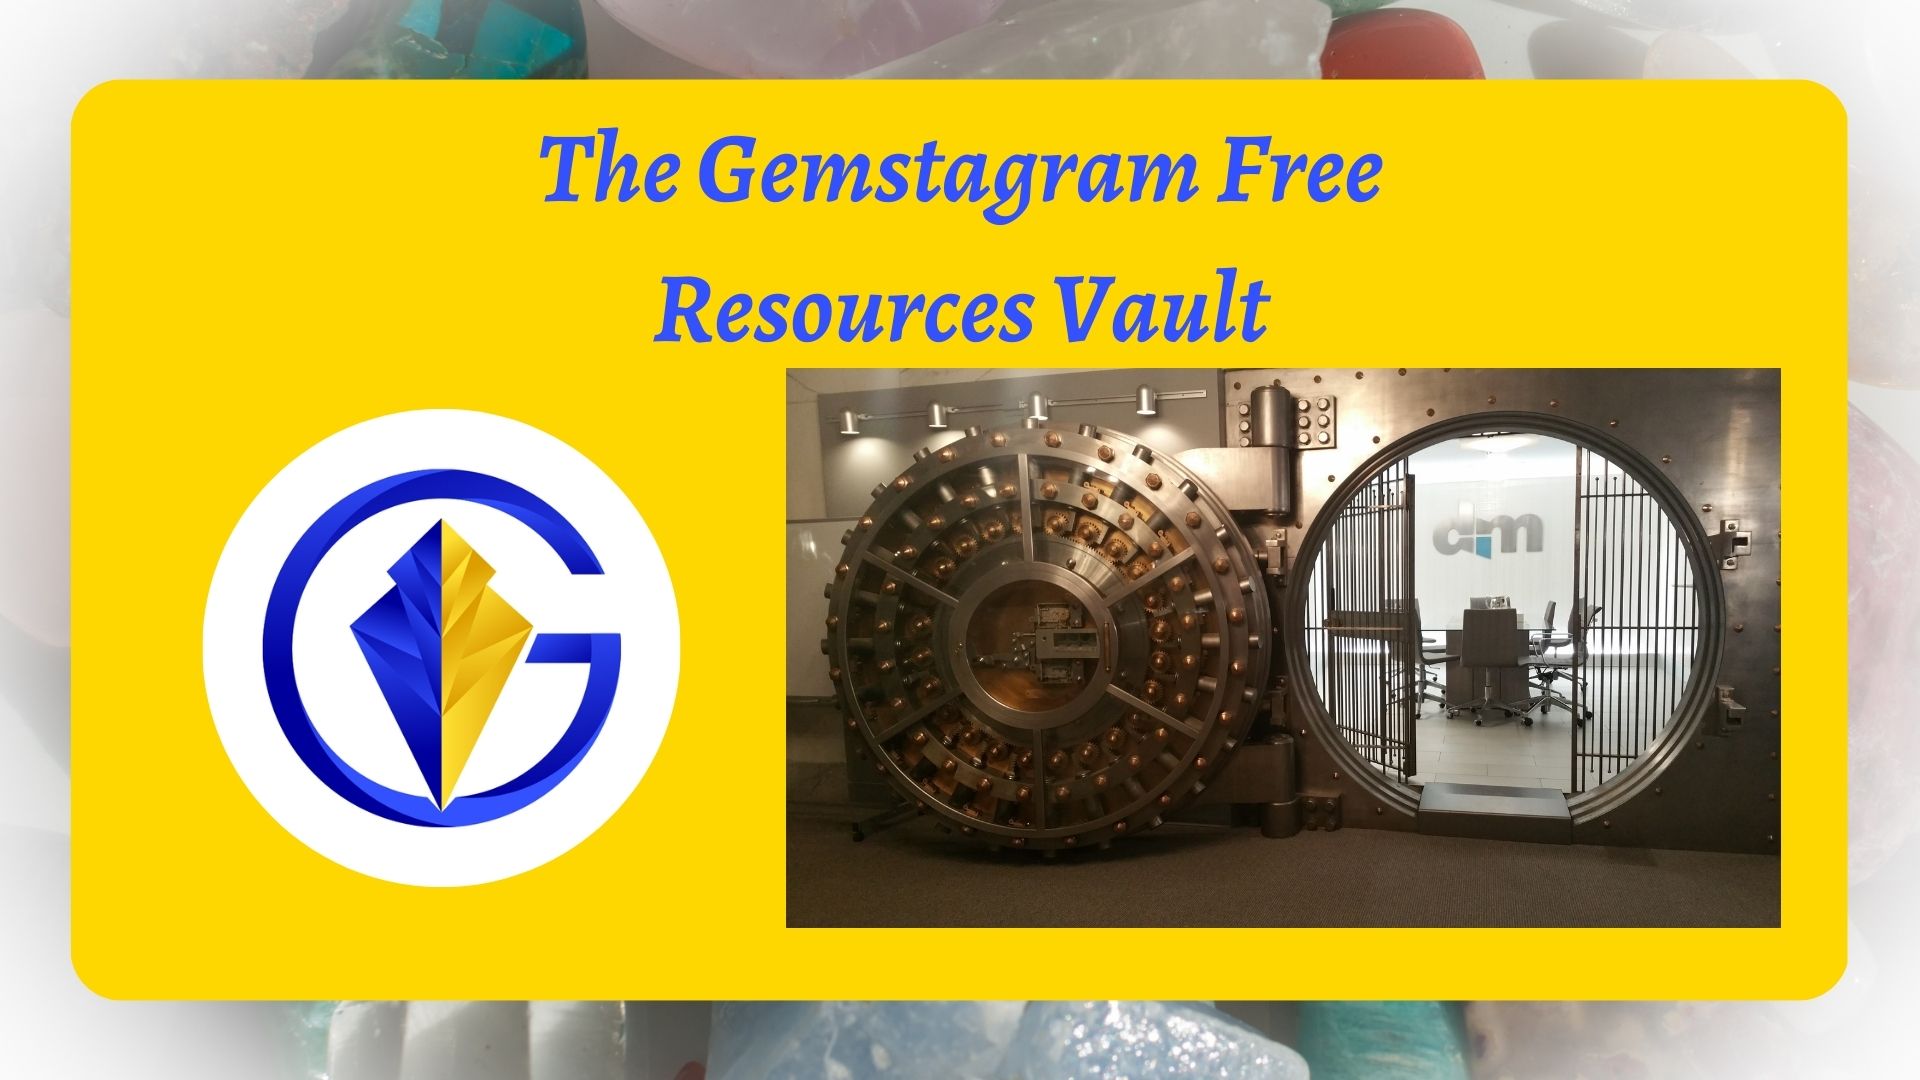 The Gemstagram Free Resources Vault